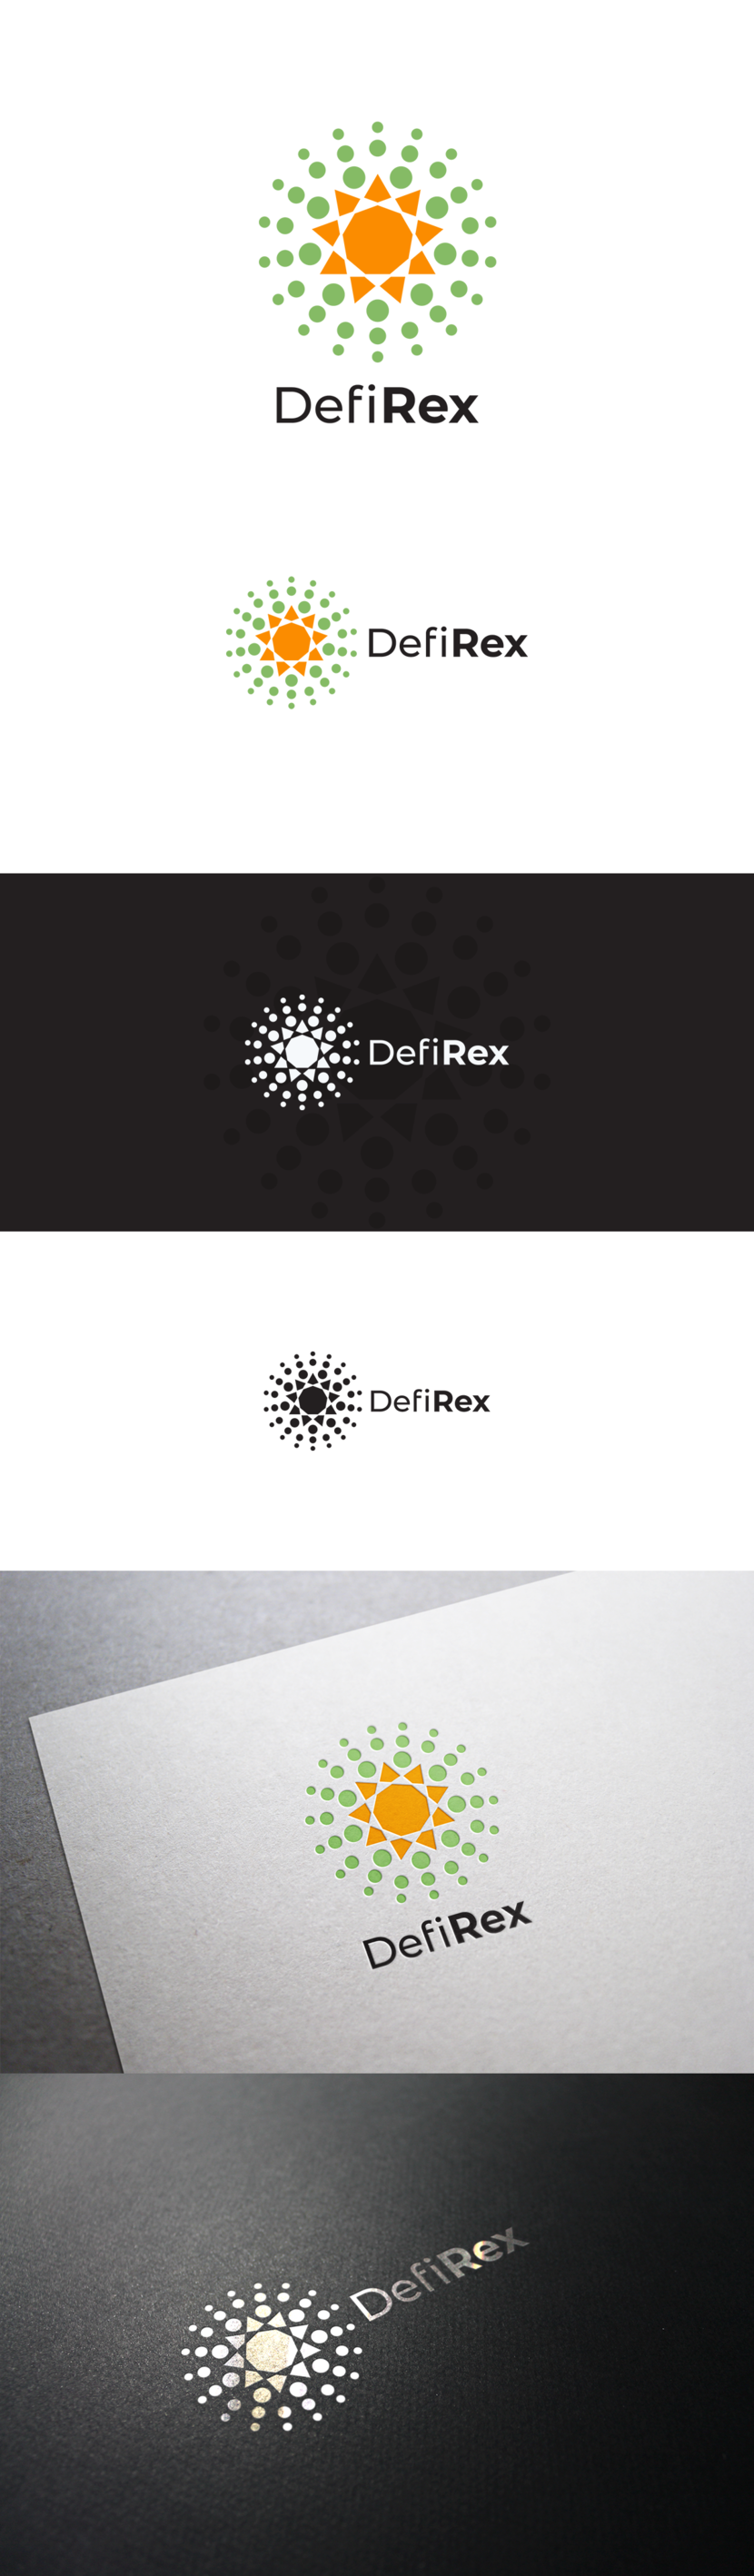 Разработка логотипа для платформы DF.help, компания DefiRex